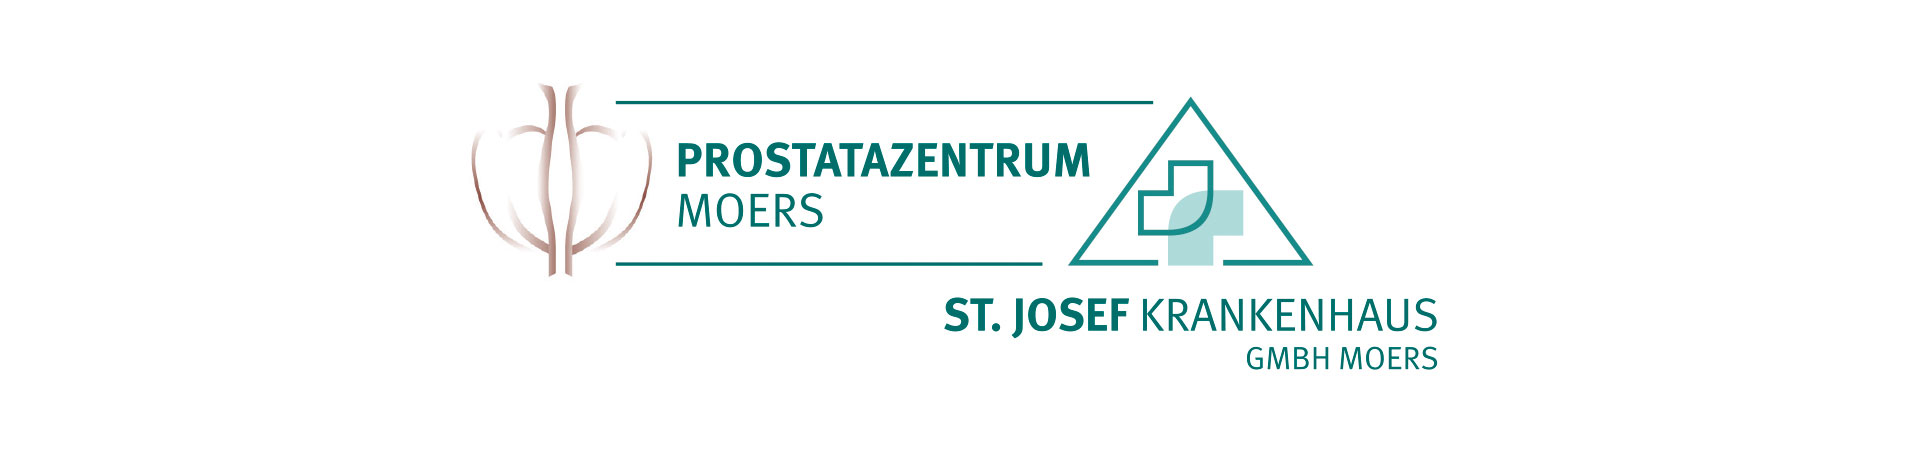 Untersuchung im Prostatazentrum im St. Josef Krankenhaus Moers